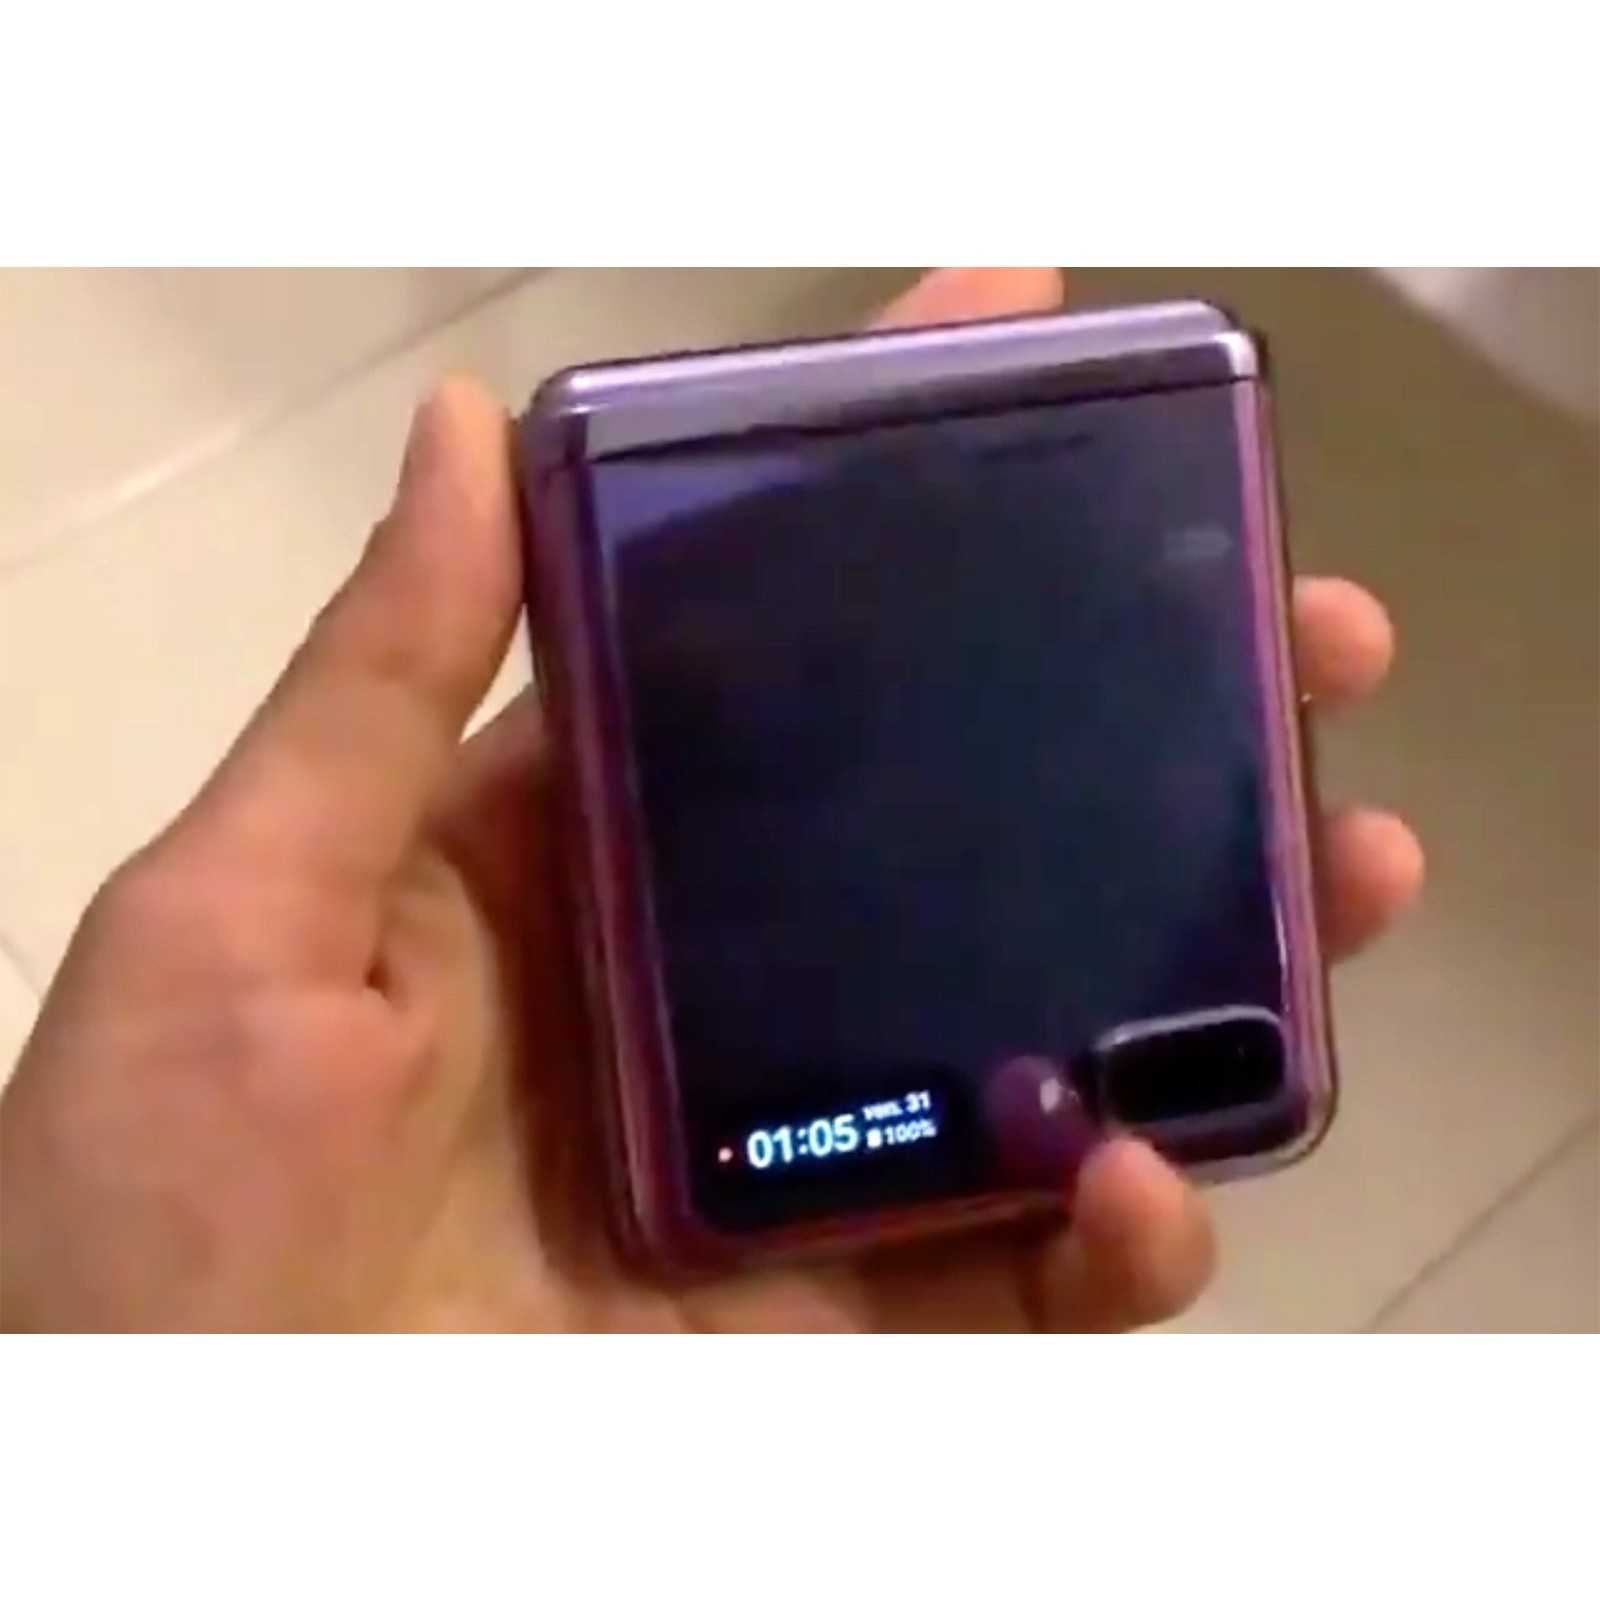 Samsung готовит к выходу флагманский смартфон s21 ultra с камерой небывалых размеров. видео - cnews